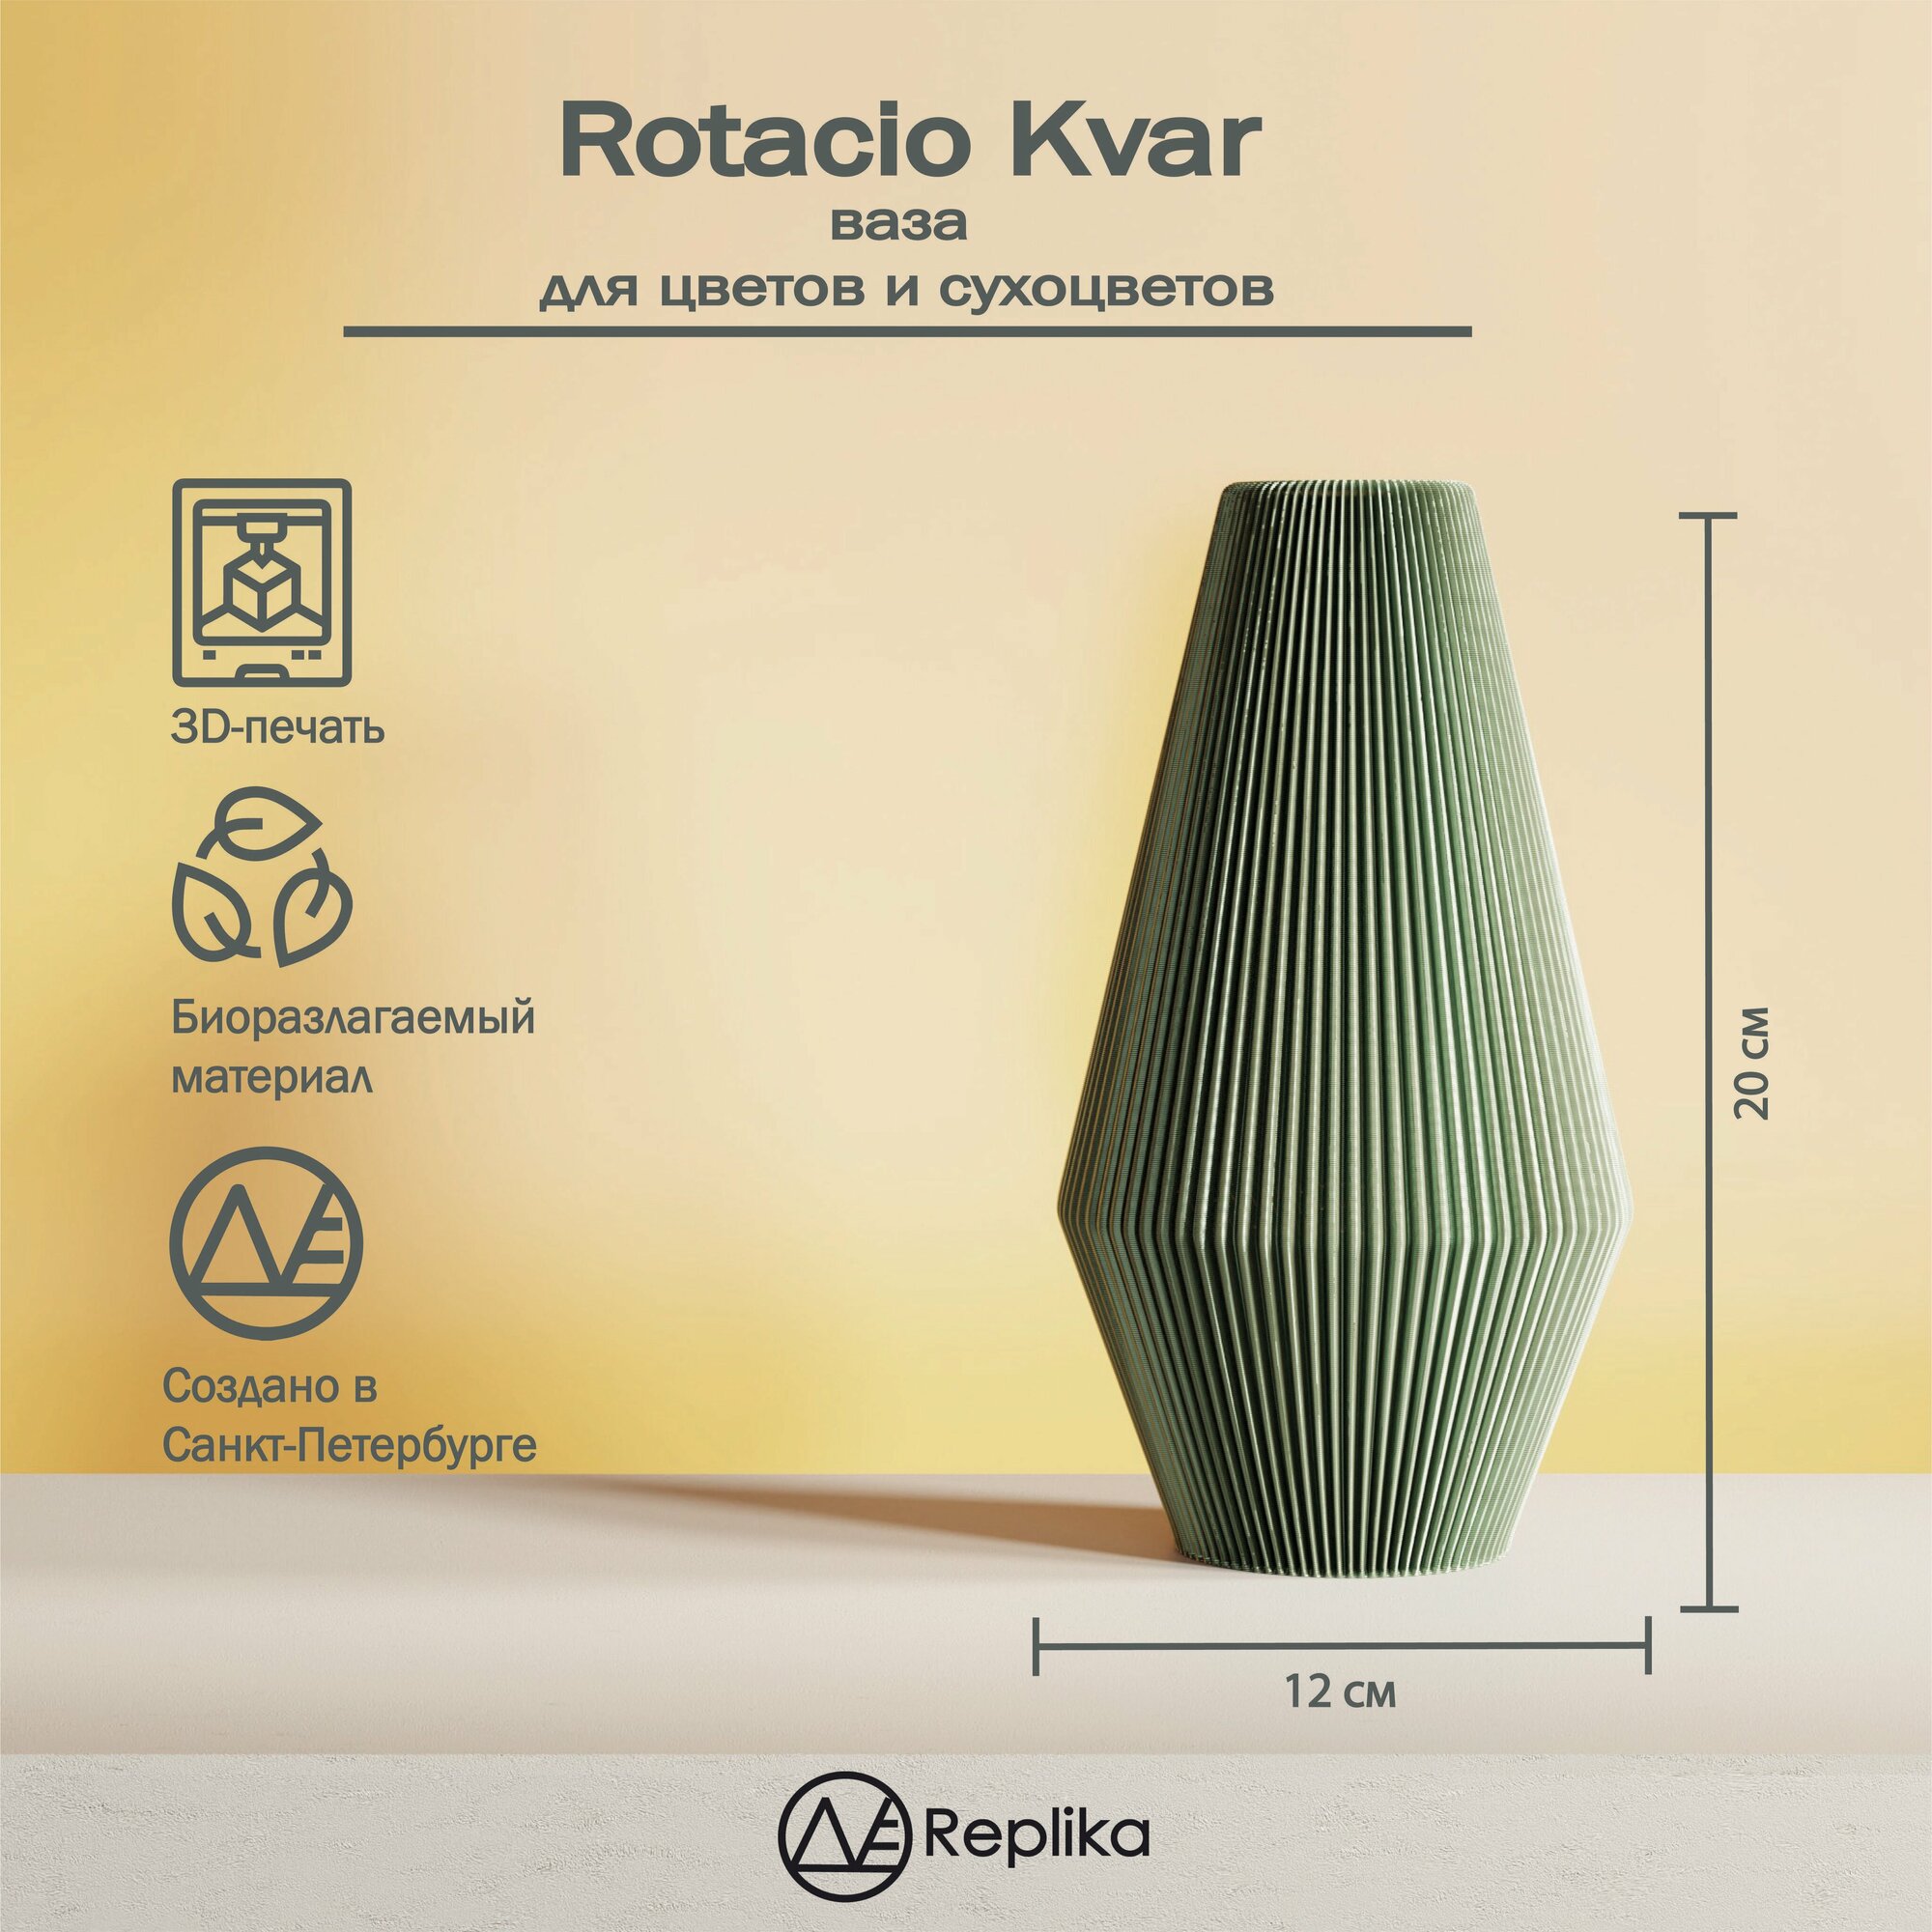 Rotacio Kvar Декоративная ваза интерьерная для цветов и сухоцветов